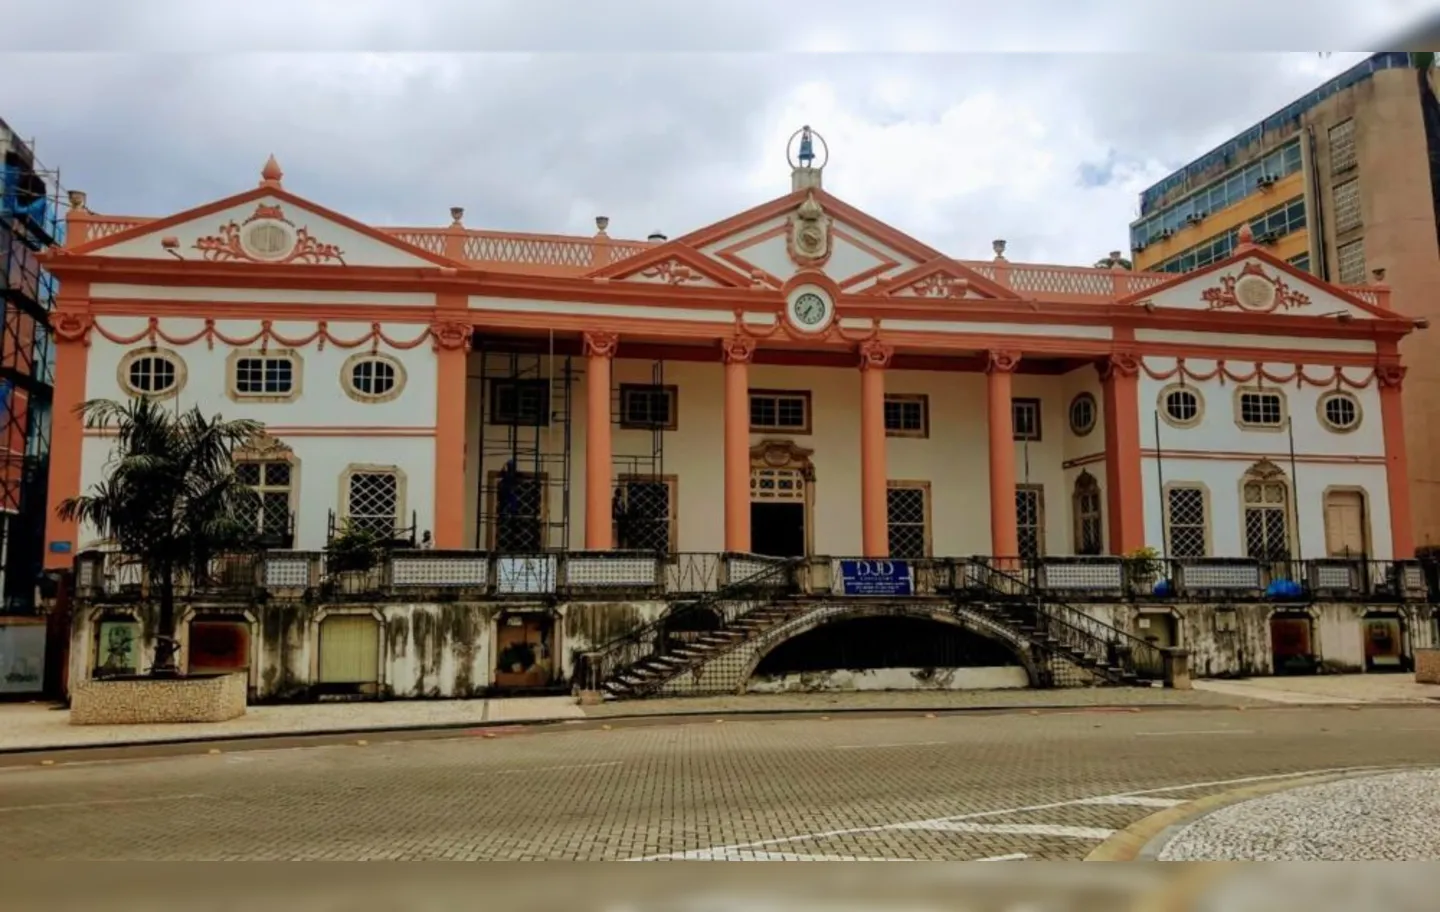 Palácio da Associação Comercial da Bahia